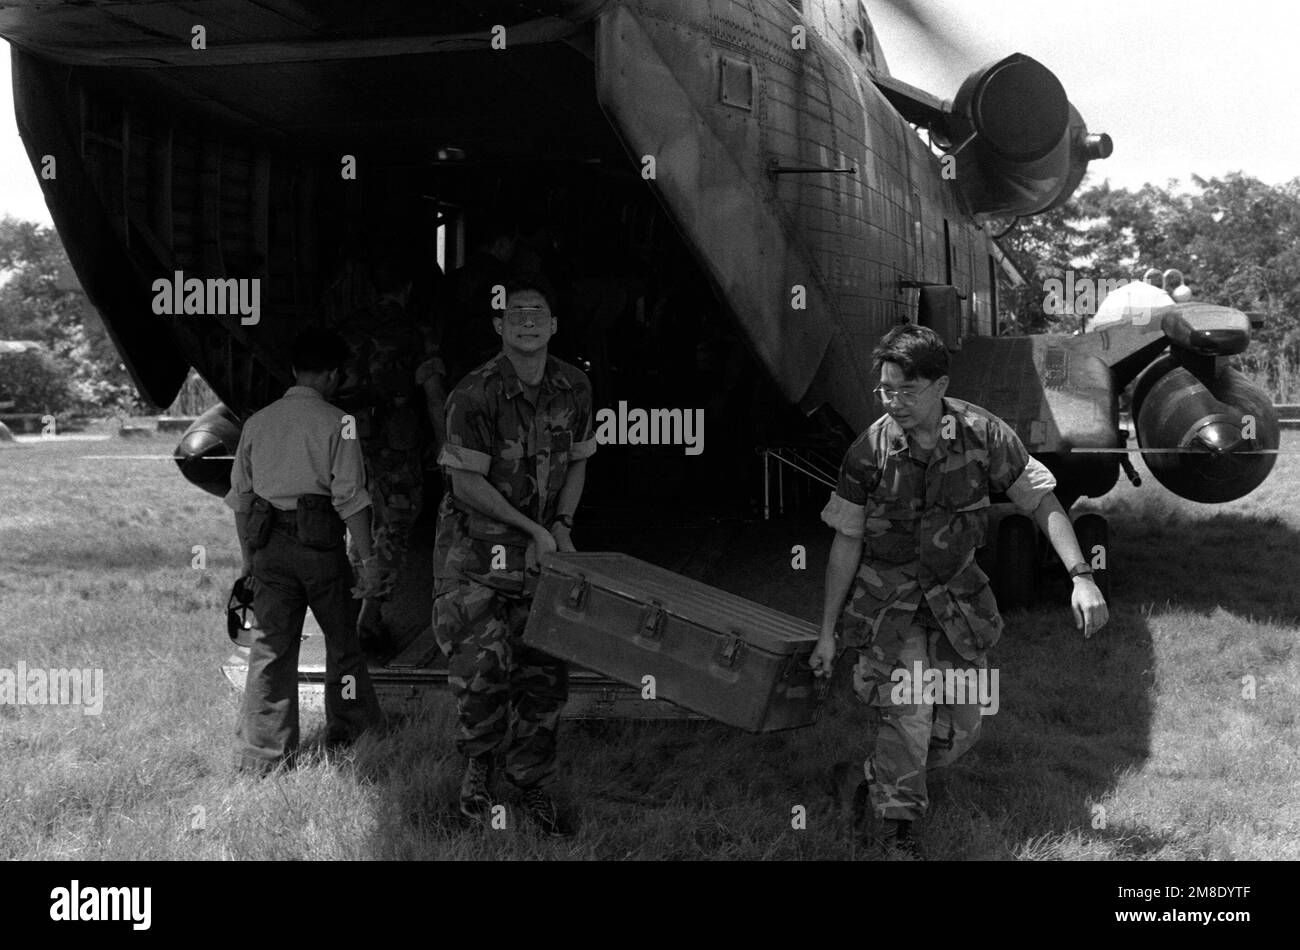 Los infantes de marina de los Estados Unidos descargan suministros de un helicóptero CH-53D Sea Stallion durante los esfuerzos de rescate y recuperación en una zona que sufrió daños por terremotos. Base: Cabanatuan Ciudad País: Filipinas Foto de stock